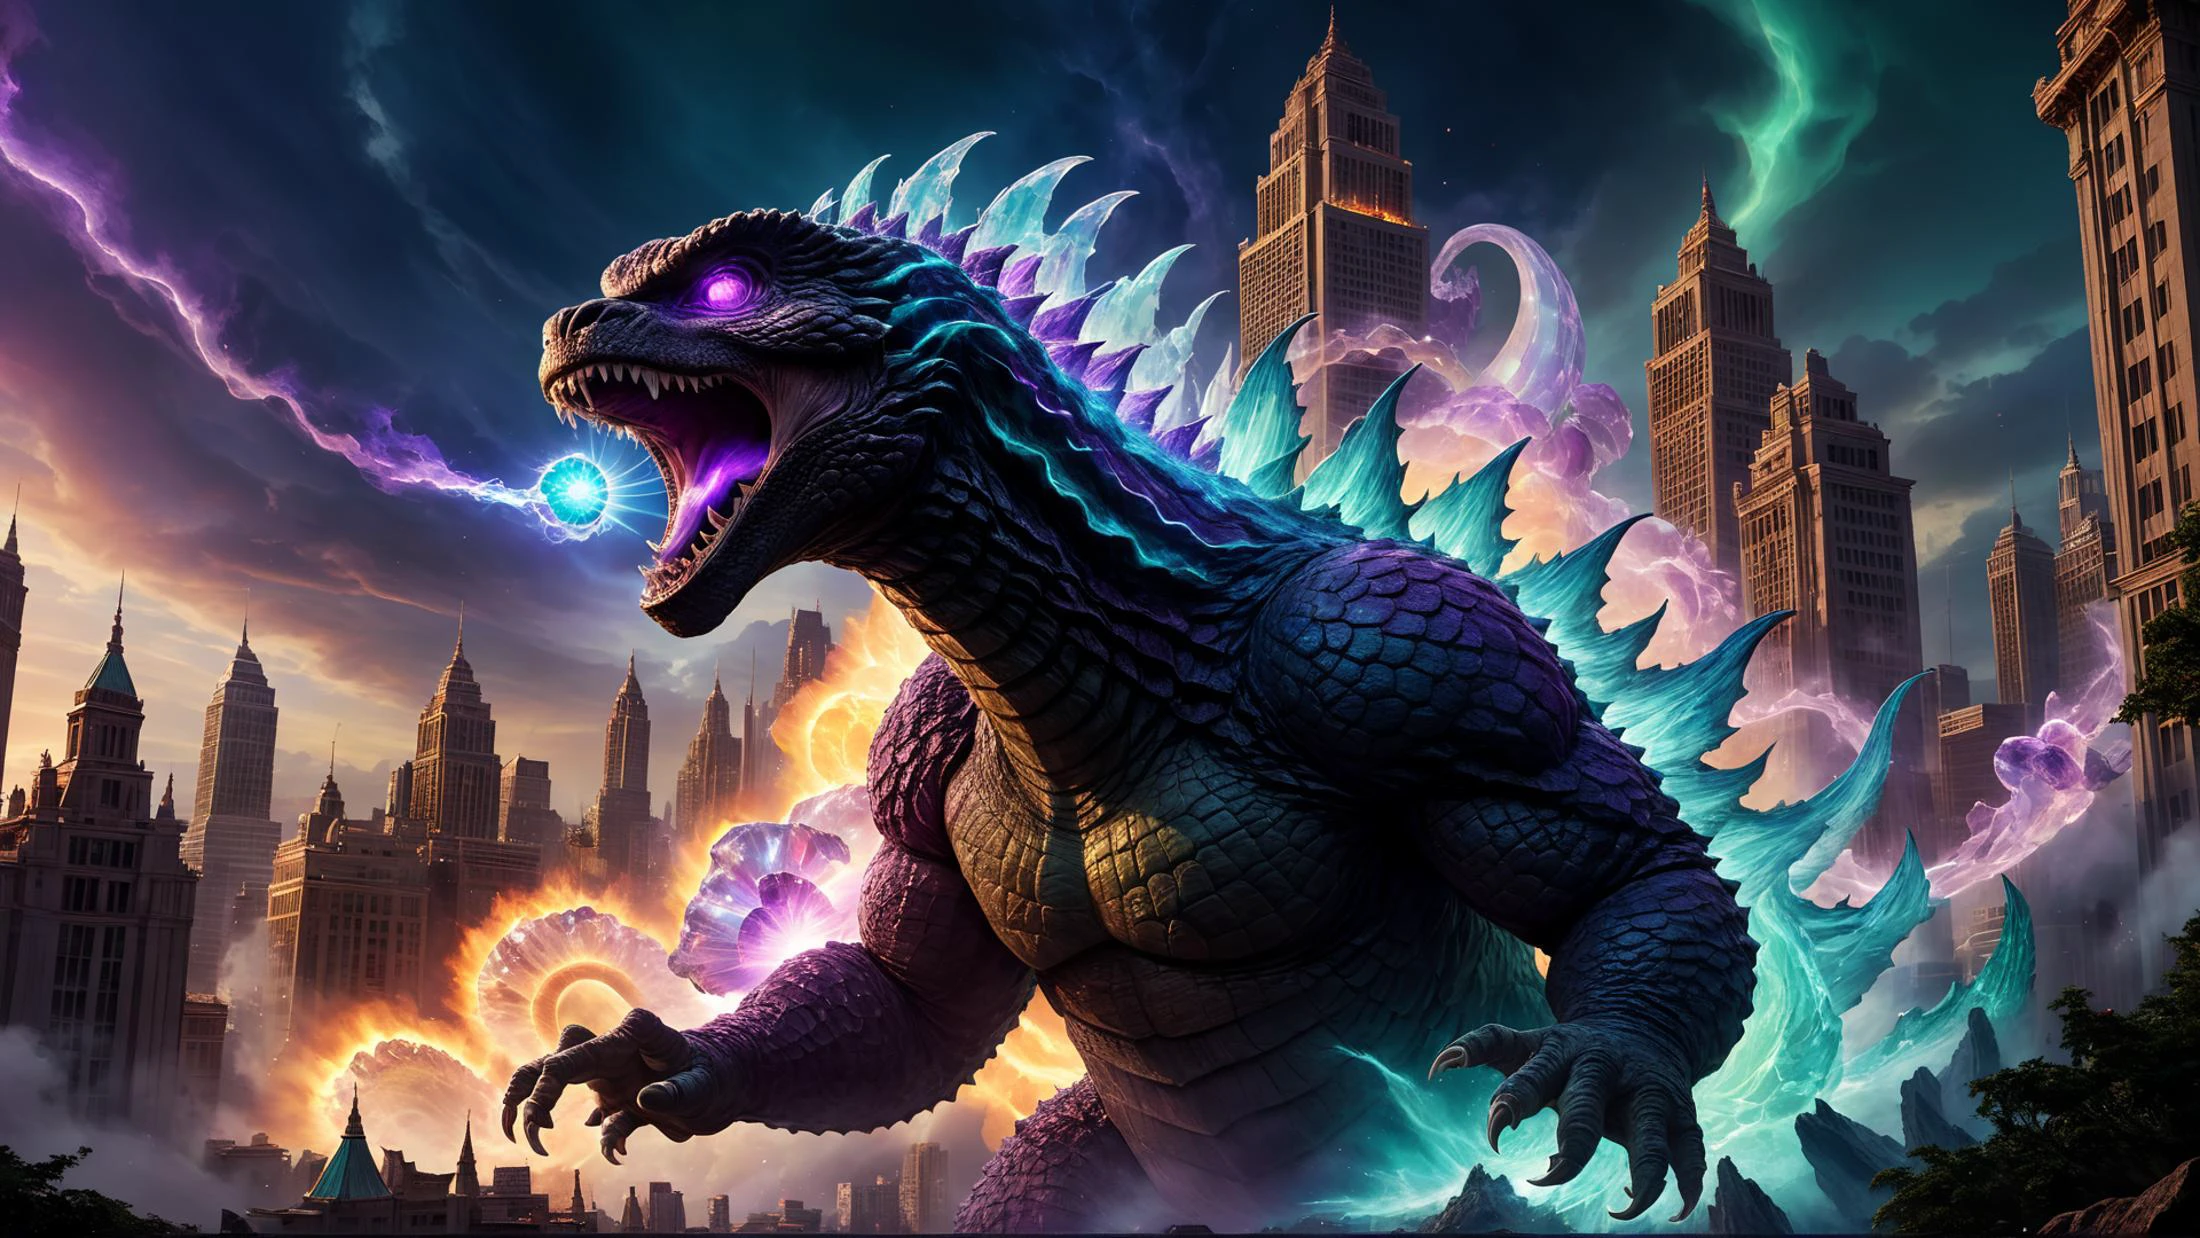 Plano general de Godzilla arrasando en el paisaje urbano de fantasía de los mitos.,  Vórtice giratorio de luz iridiscente., magia, poder luminiscente, cuarzo, amatista, opal, colores mezclados, salida, magiaal wraith, Godzilla arrojando energía bruta por la boca, tiempo olvidado, místico, formas únicas de formas de cristal, (Obra maestra:1.2), (Composición épica:1.4), (talento:1.2), Ultra detallado, iluminación cinematográfica, muy detallado, increíblemente detallado, (Fotorrealista:1.2), HDR, 8k, Exquisito, afilado, elegant, iluminación ambiental, Colores vivos de fantasía, alta calidad, 